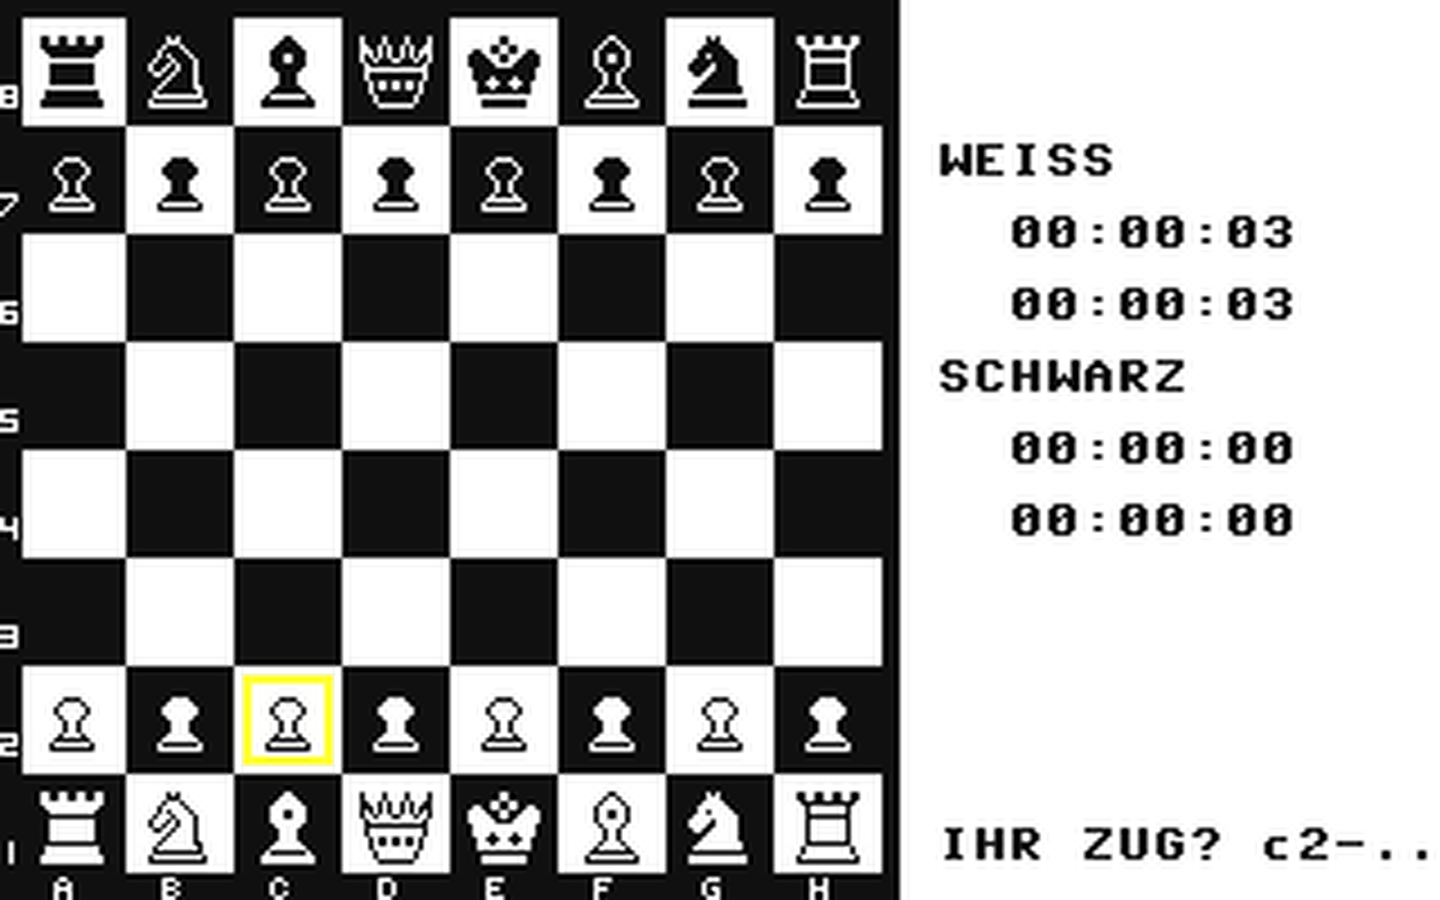 C64 GameBase komplette_Schachprogramm,_Das Falken_Verlag_GmbH 1987